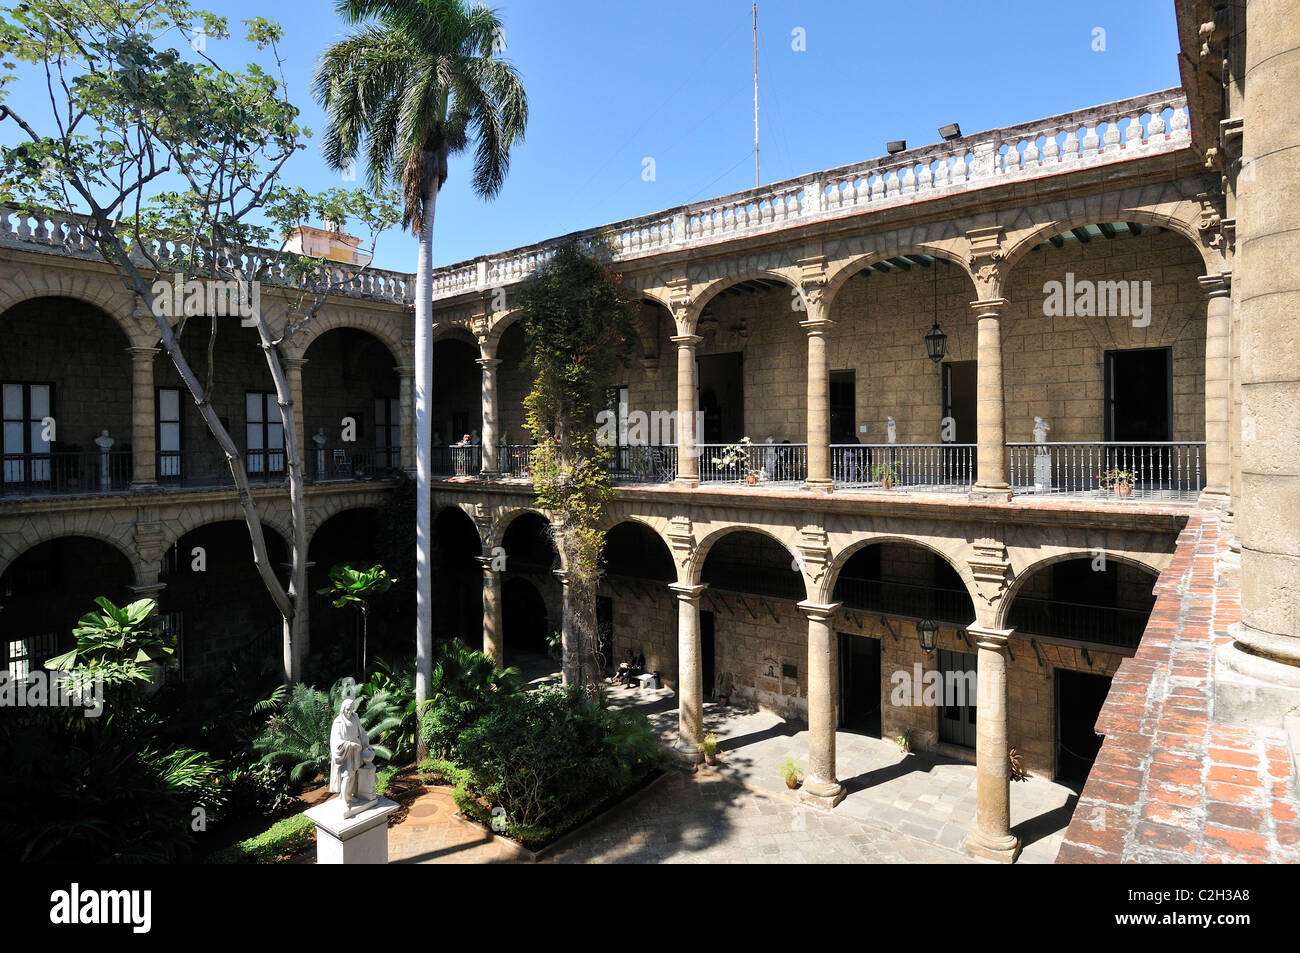 Havana. Cuba. Courtyard of Museo de la Ciudad, in the Palacio de los Capitanes Generales, Habana Vieja / Old Havana. Stock Photo